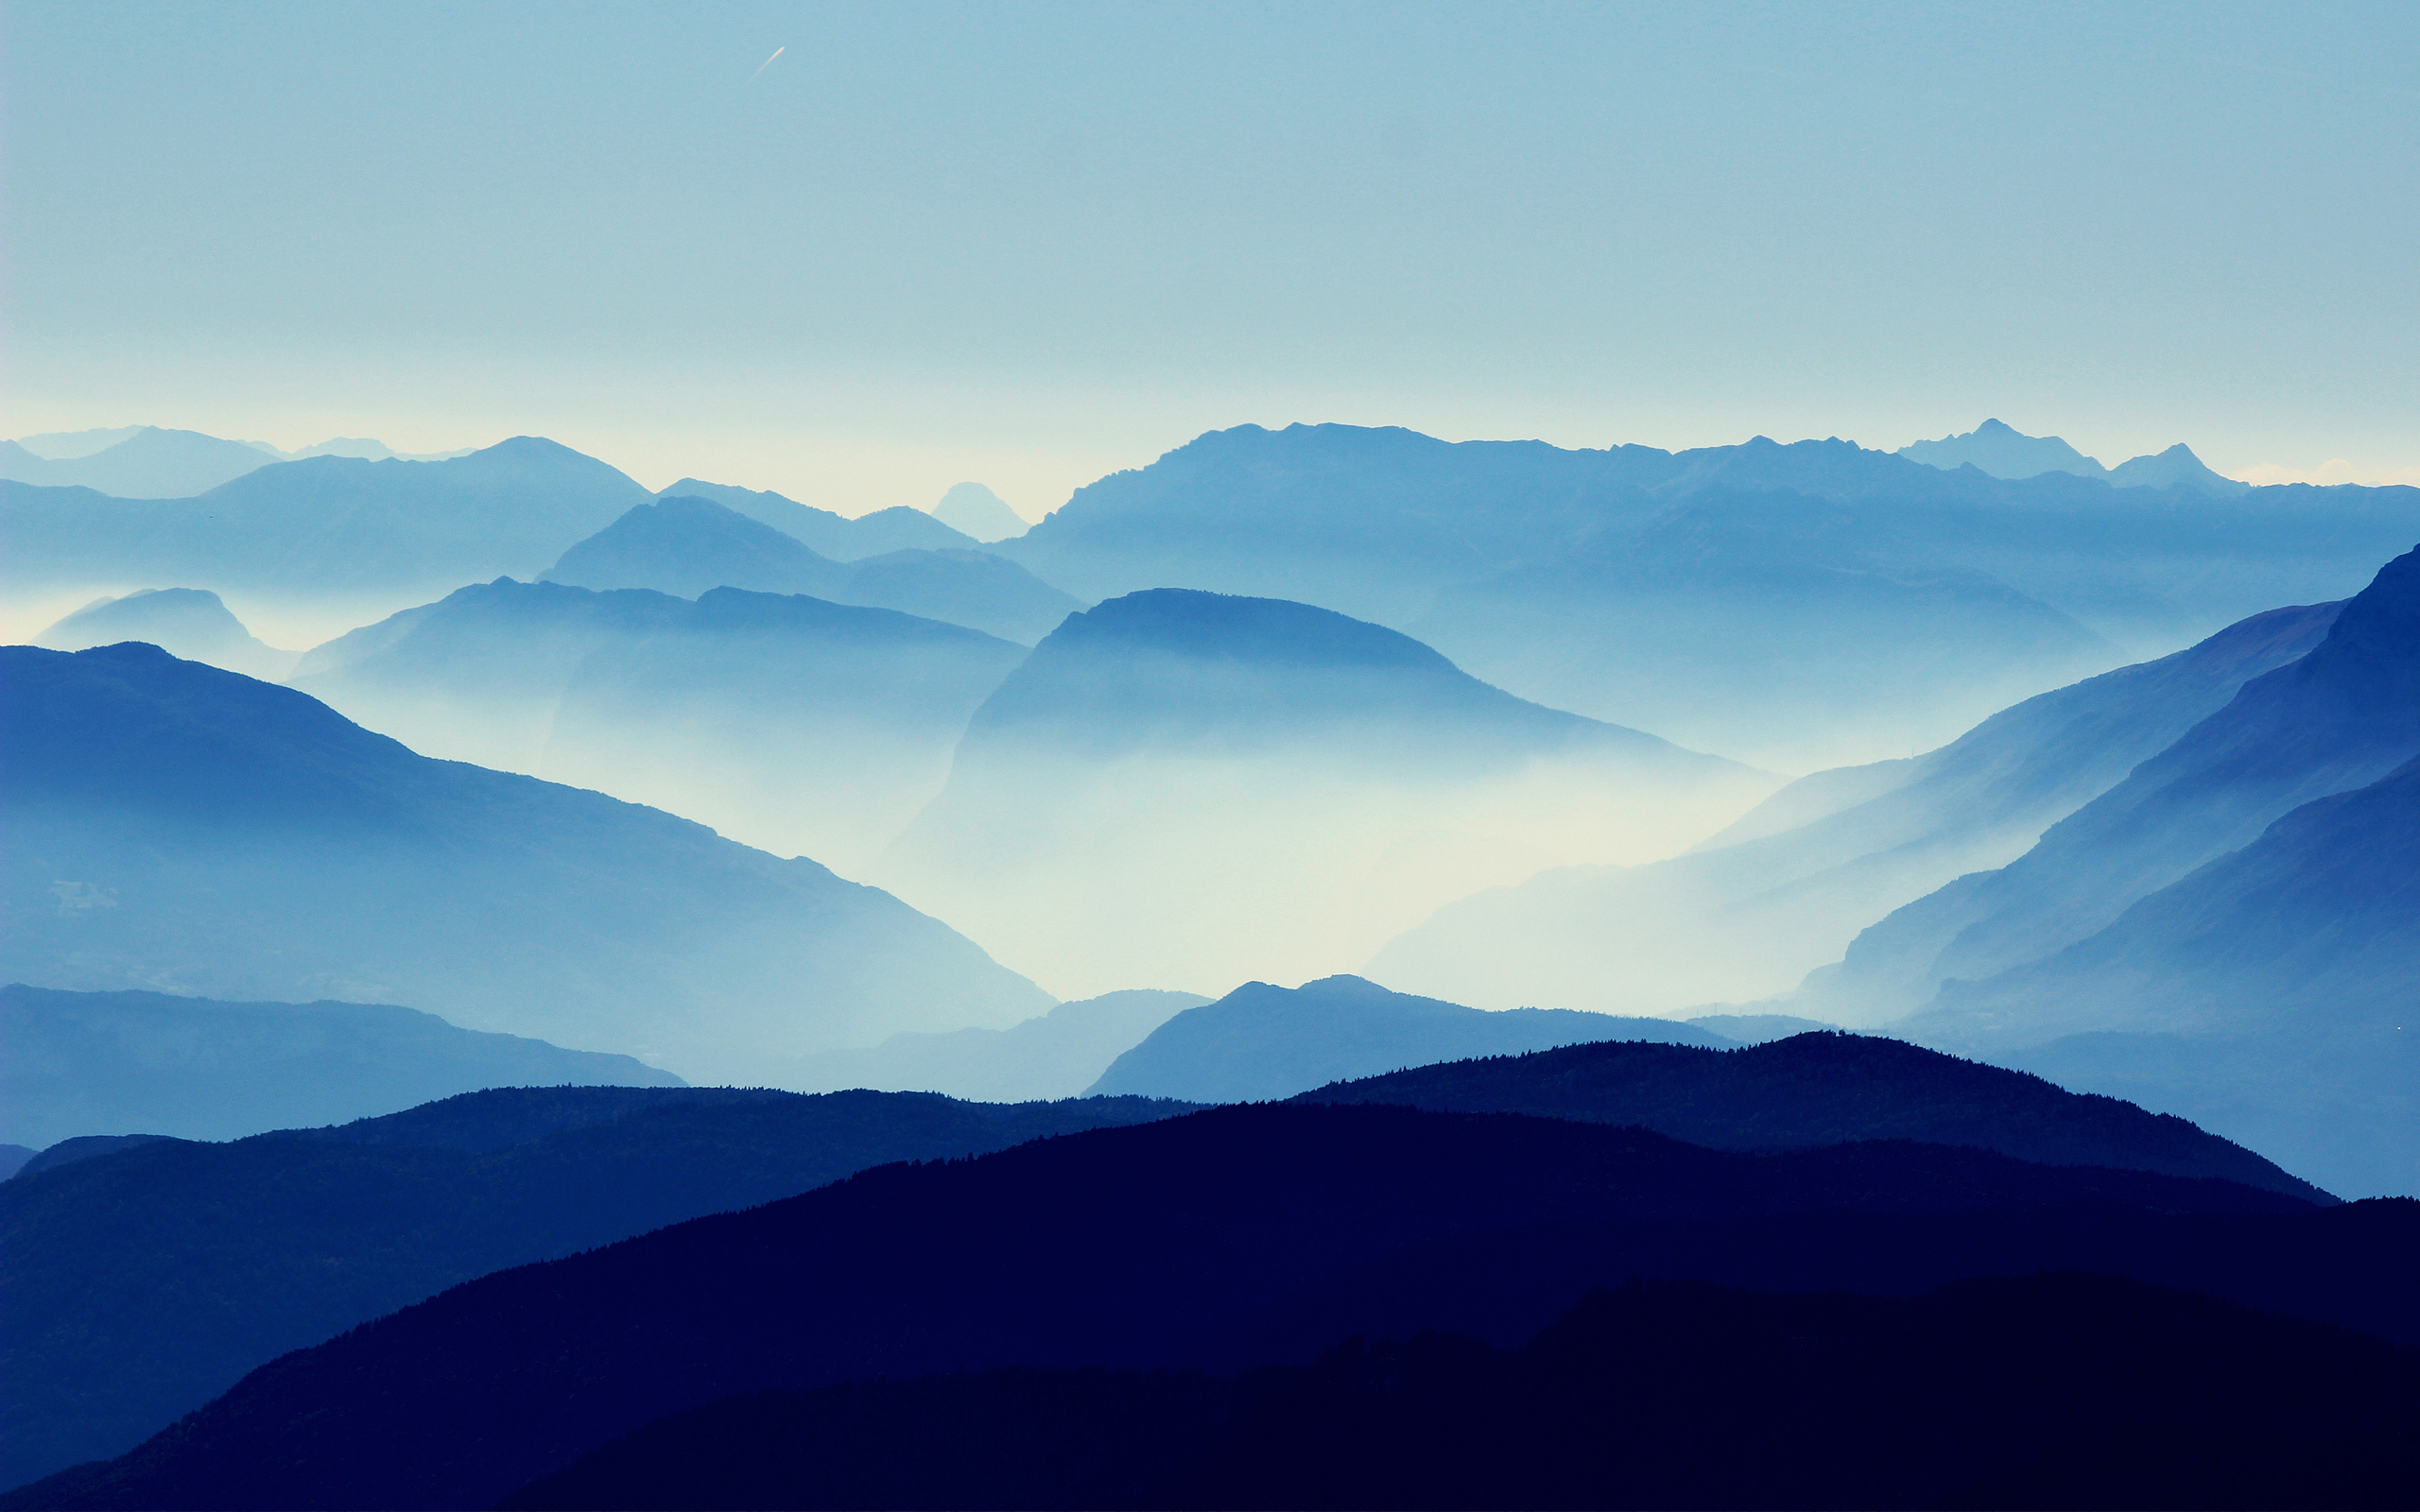 General 2560x1600 nature landscape mountains mist blue